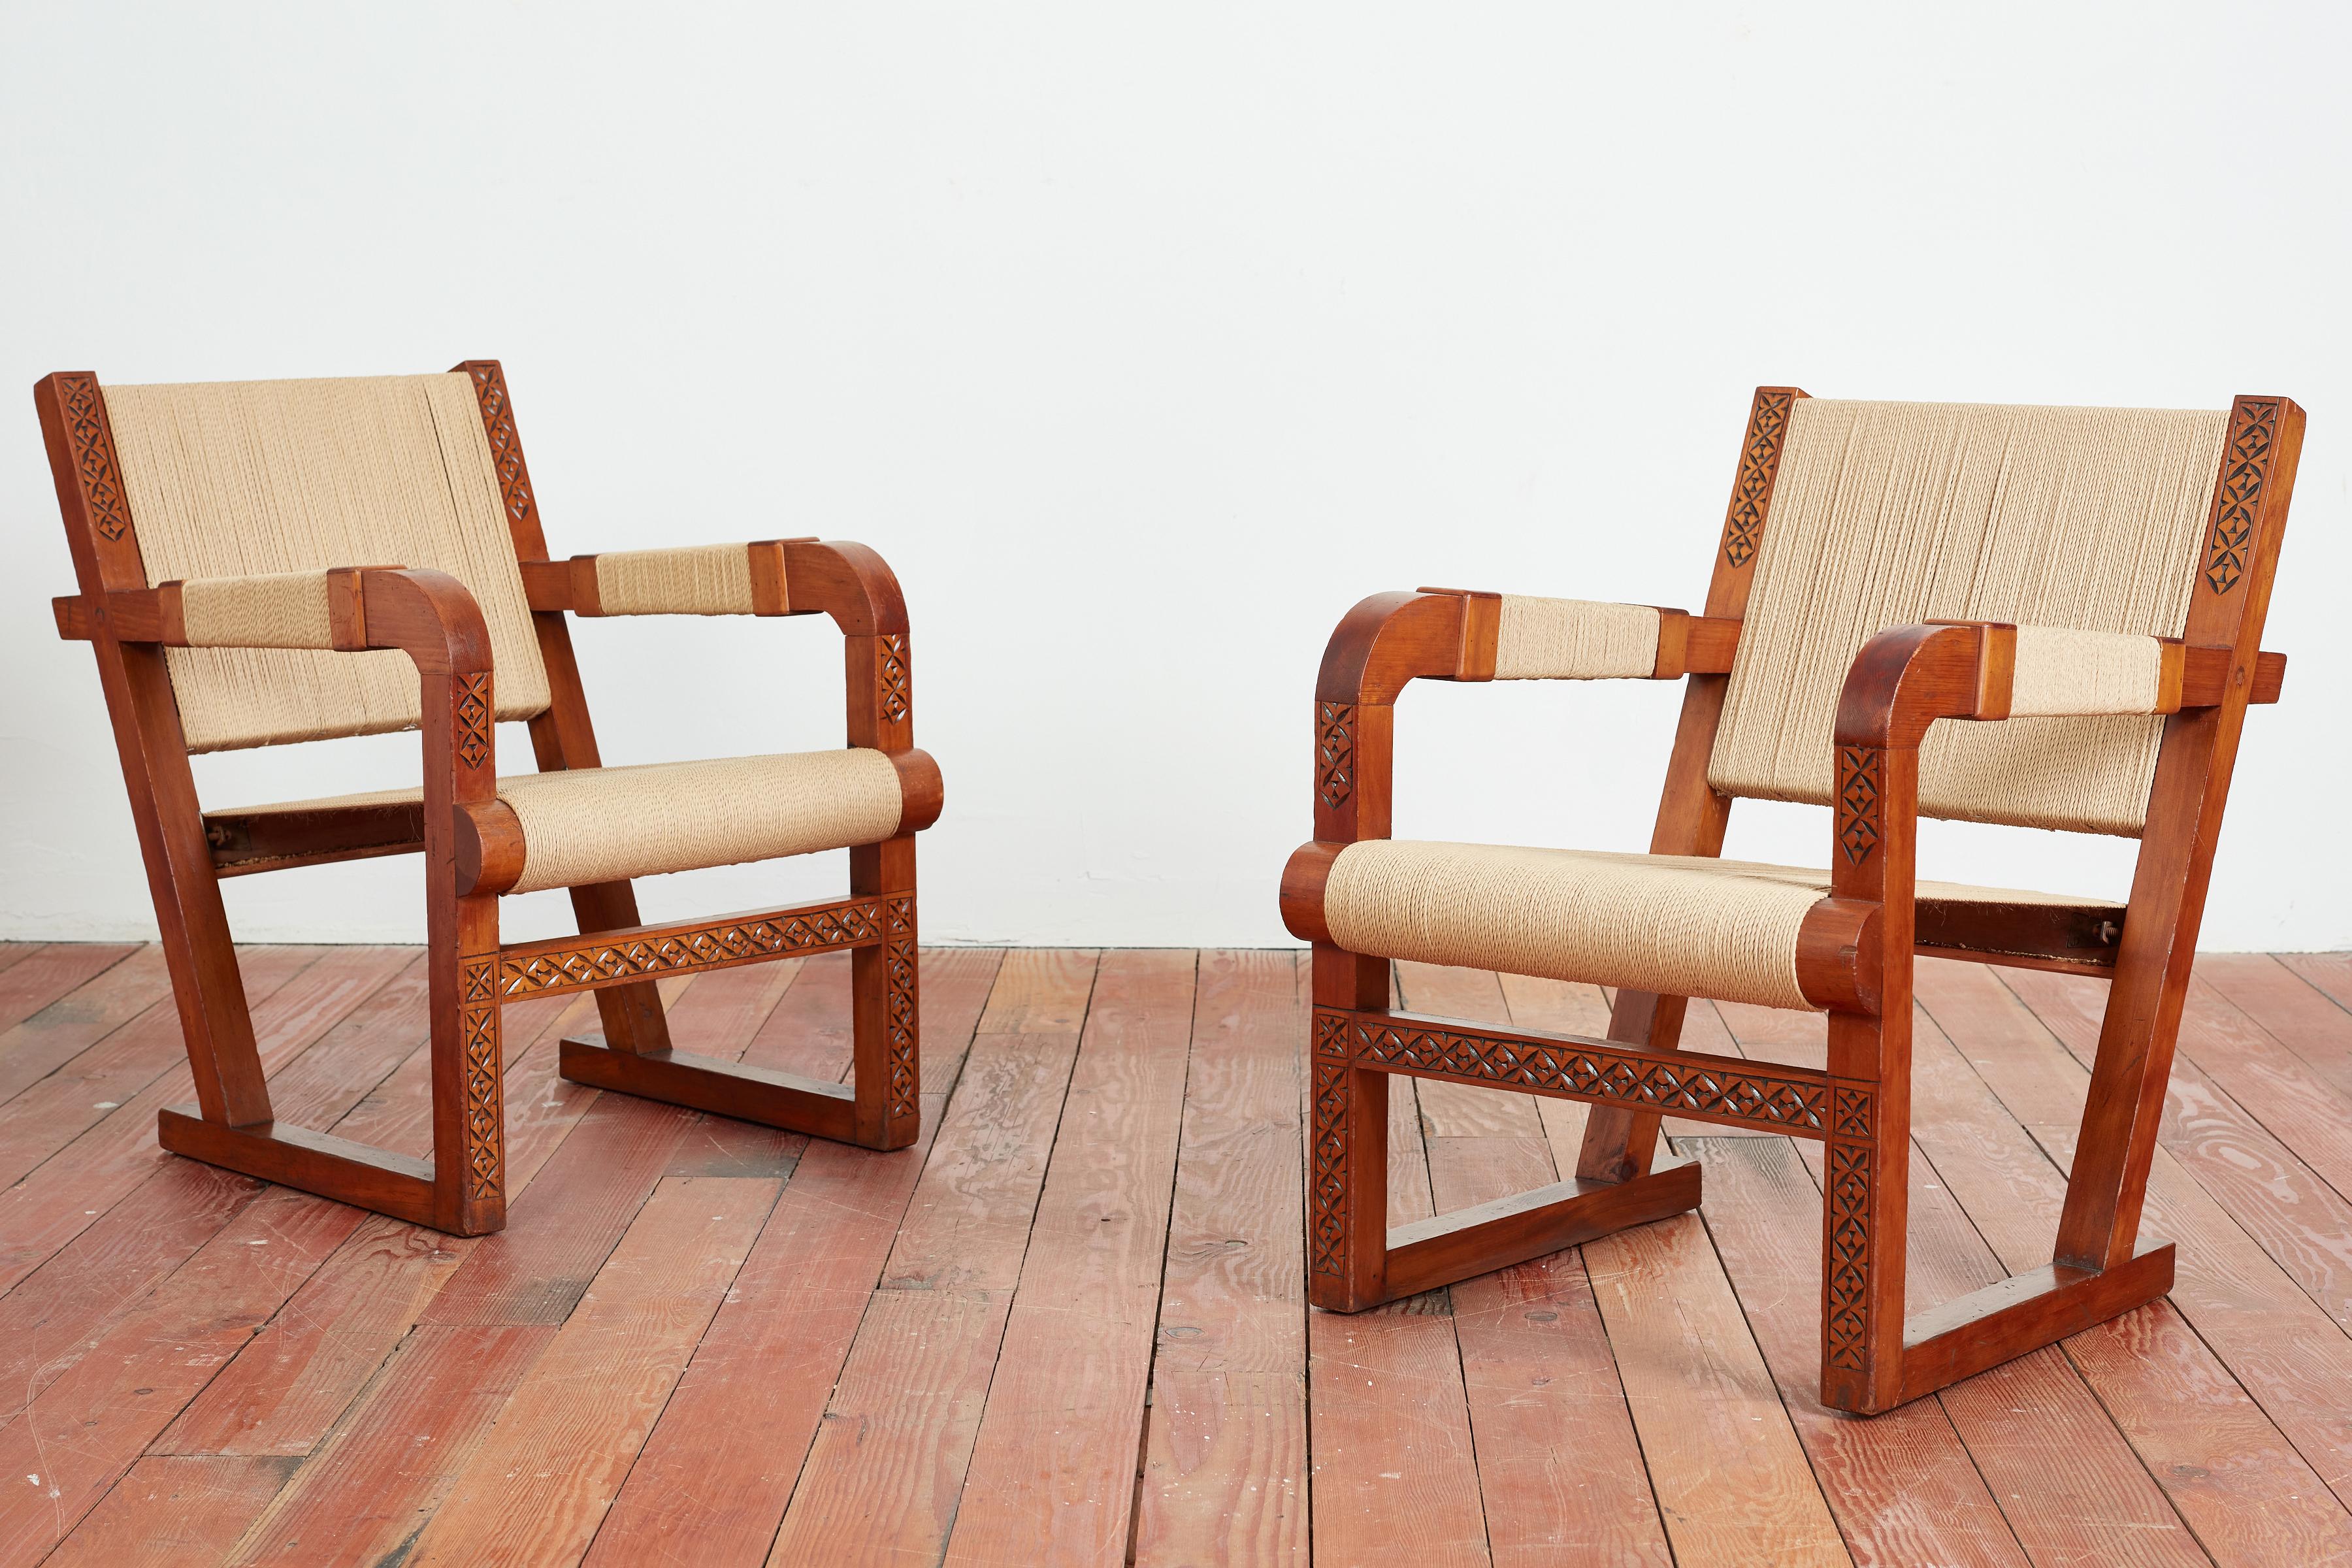 Ein Paar Francis Jourdain-Stühle
Frankreich, 1940er Jahre
Bugholzarmlehnen aus Eichenholz mit Sitzfläche, Rückenlehne und Armlehnen
Eichenholzrahmen mit handgeschnitzten Details im gesamten
Großartig aus jedem Blickwinkel mit wunderbarer